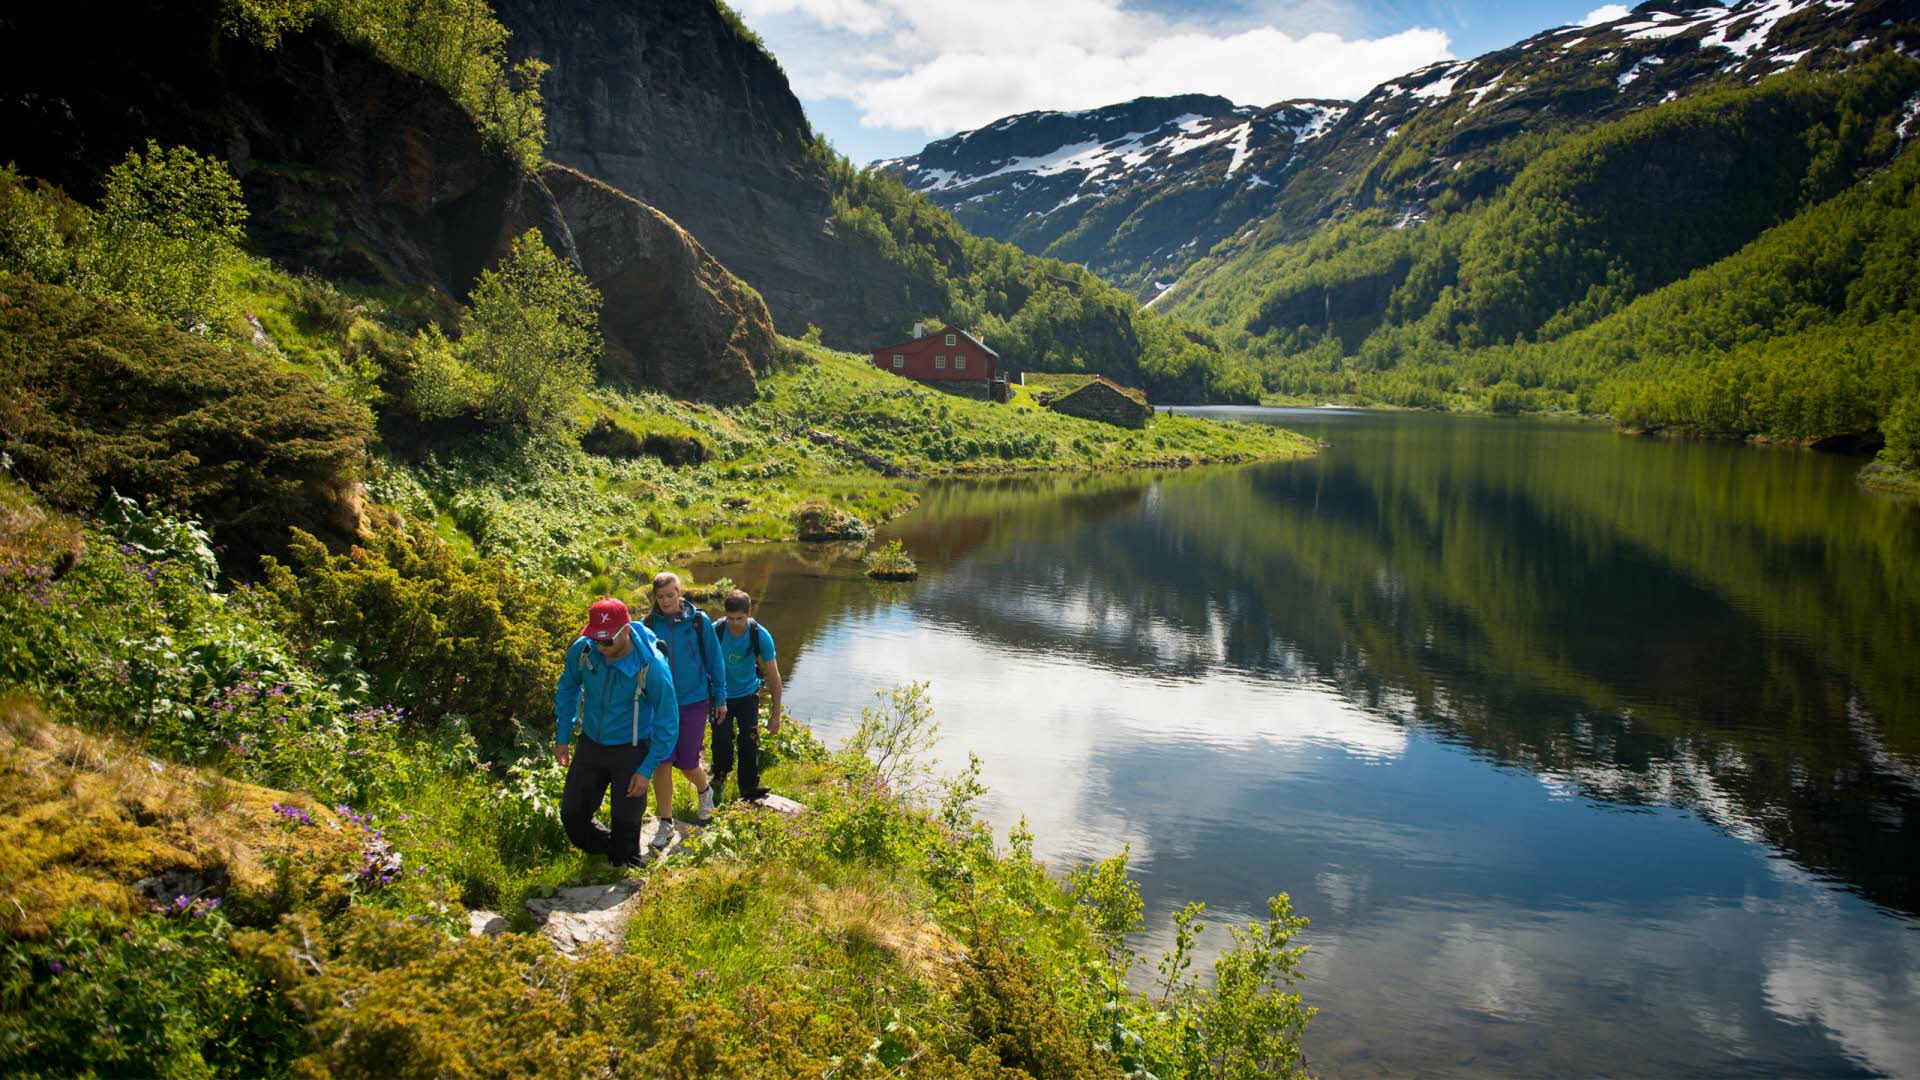 Groupe de trois personnes marchant sur un chemin longeant un lac entouré de montagnes verdoyantes parsemées de neige. 